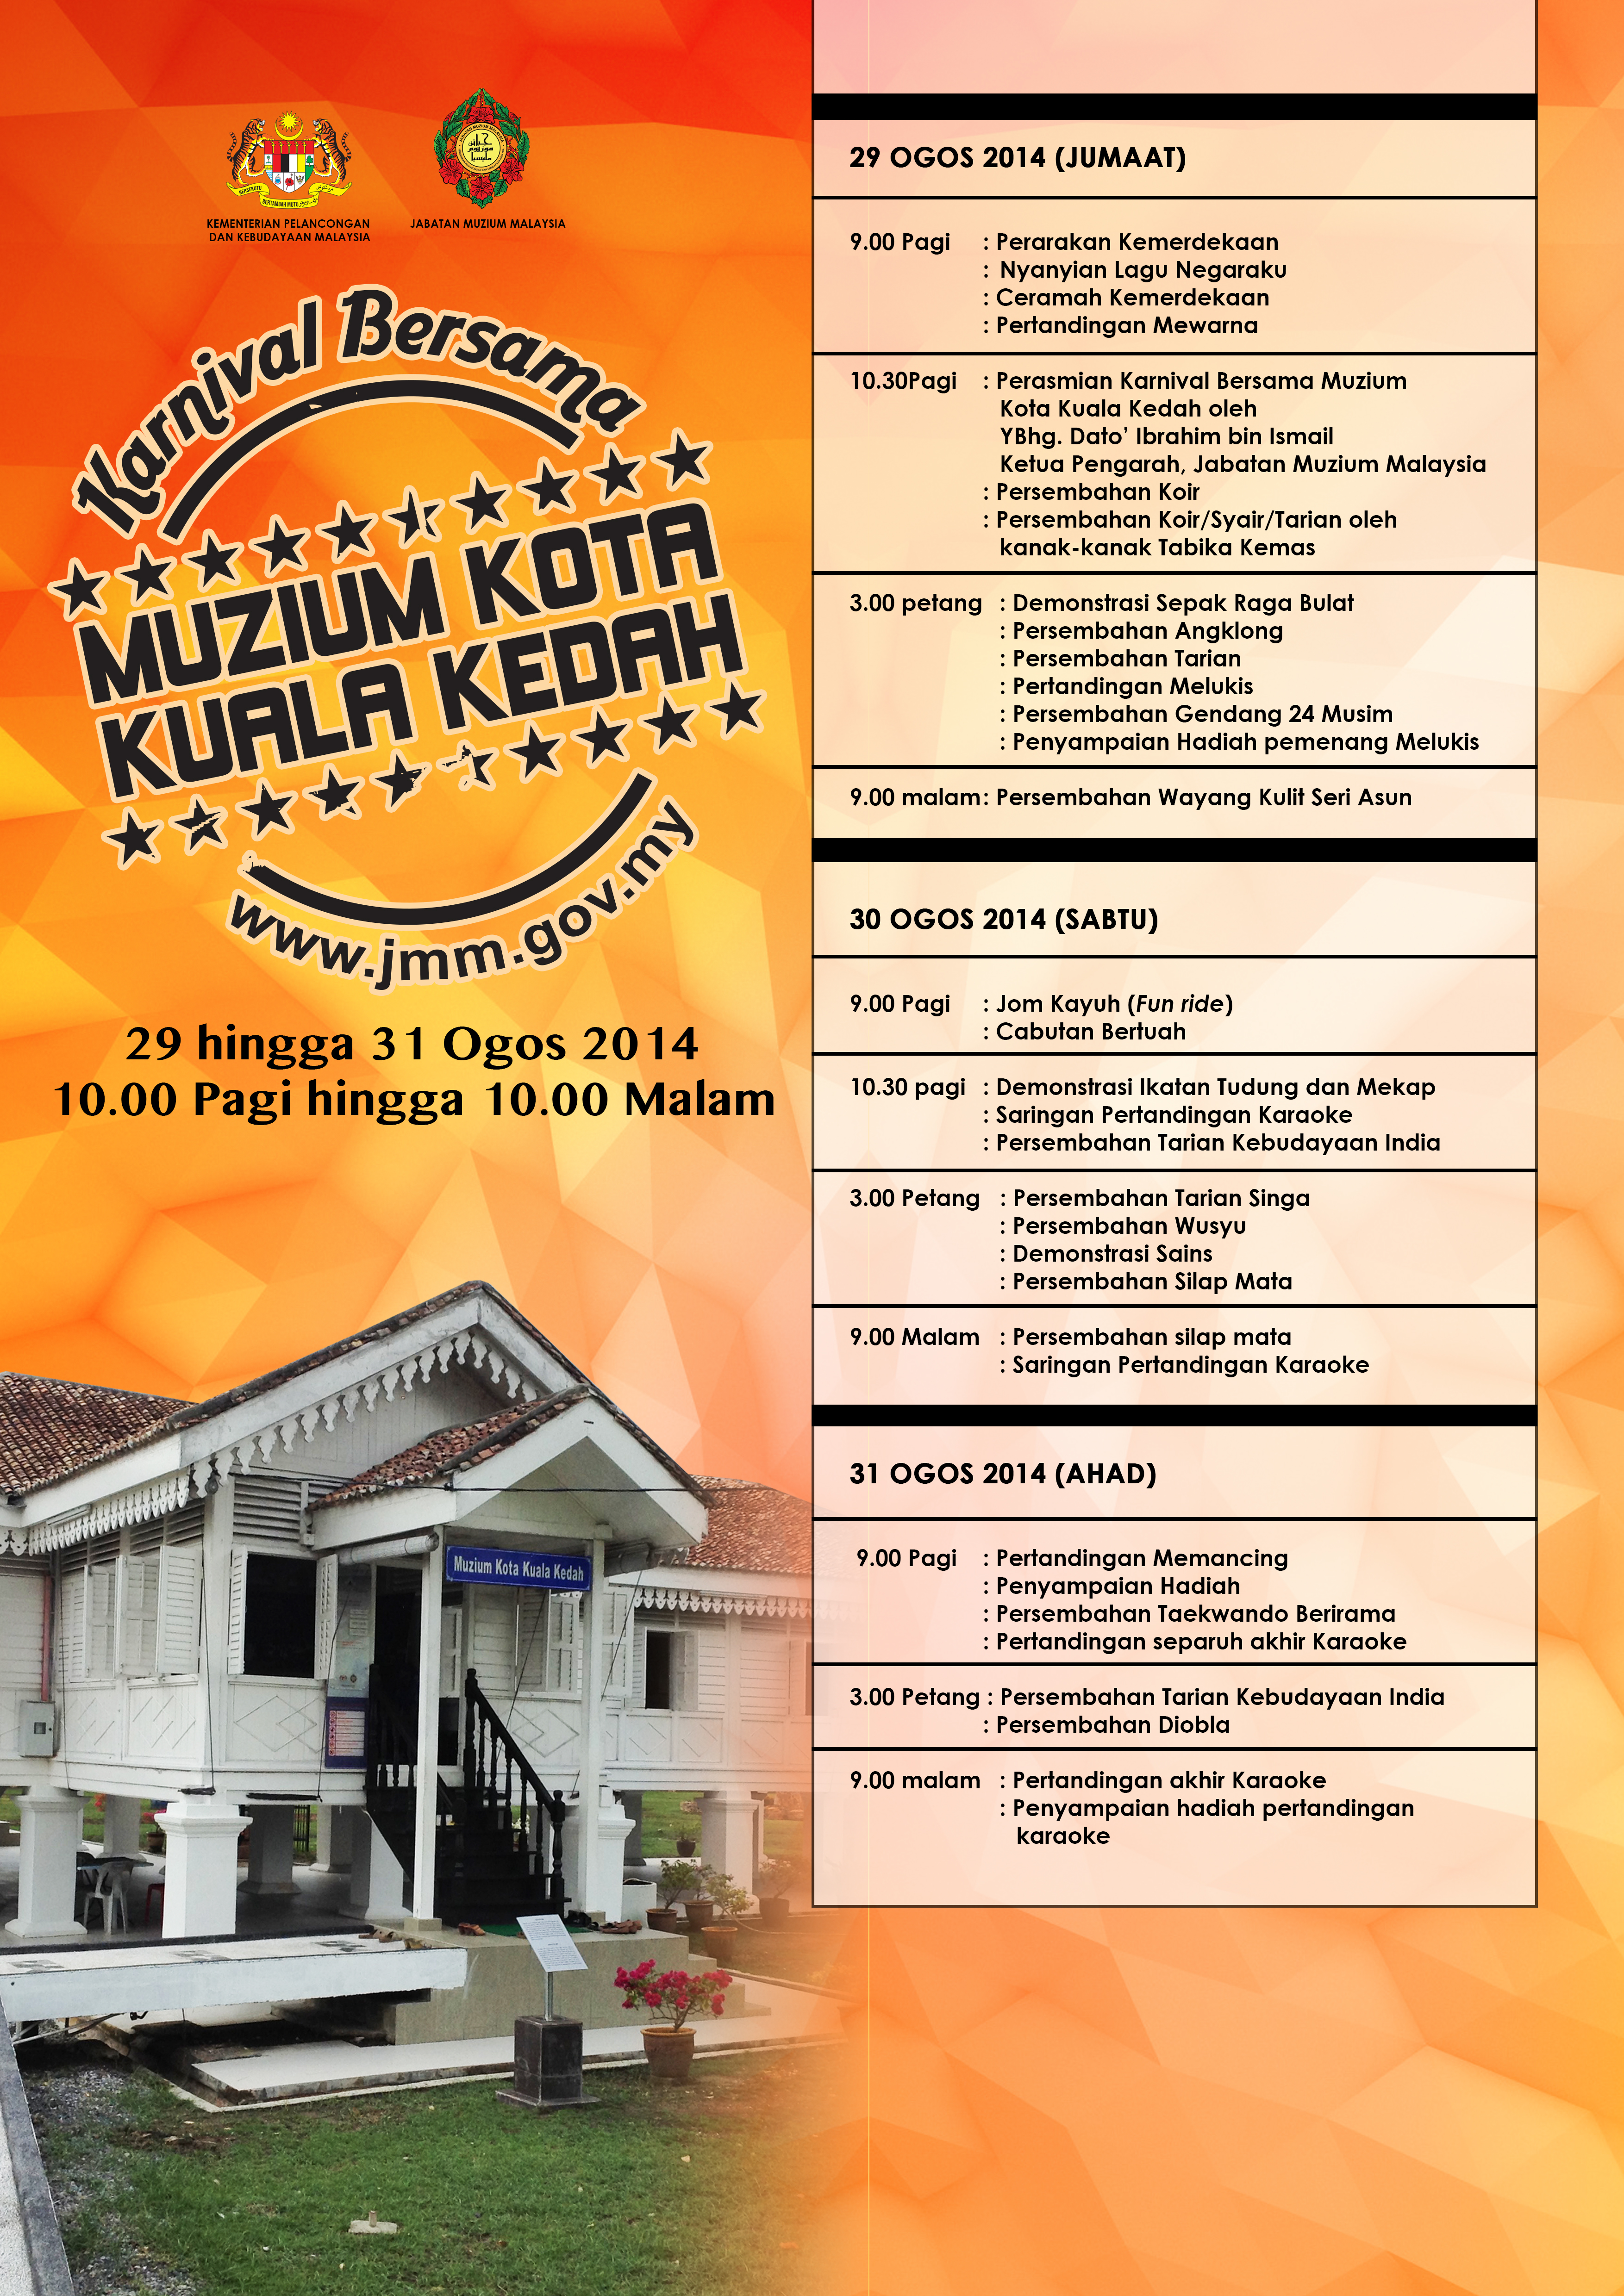 Karnival Bersama Muzium Kota Kuala Kedah